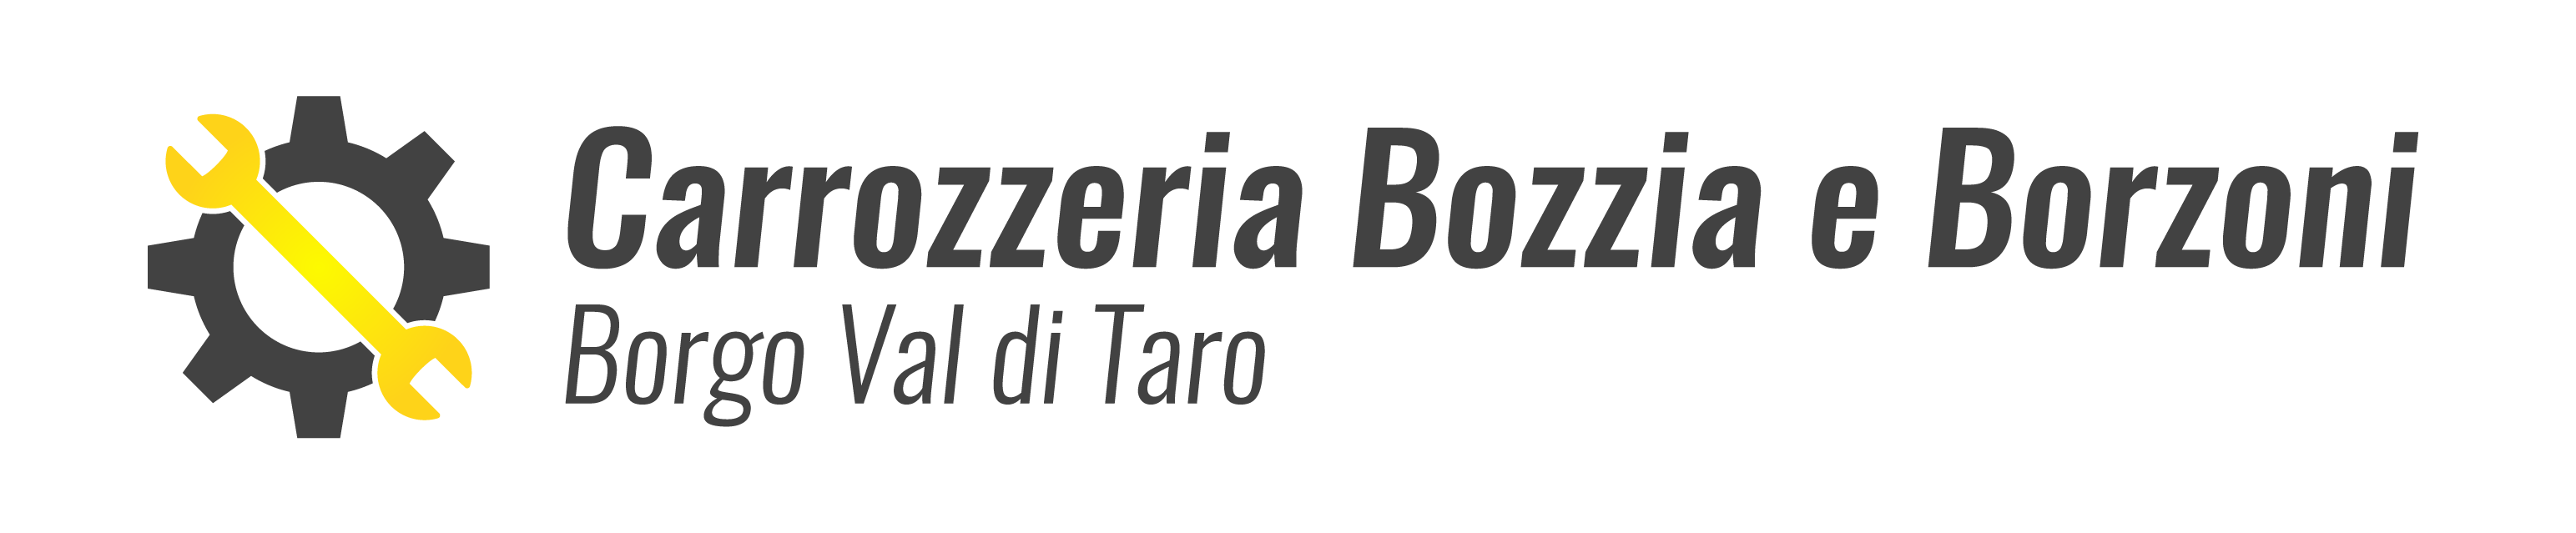 Carrozzeria Borzia e Borzoni